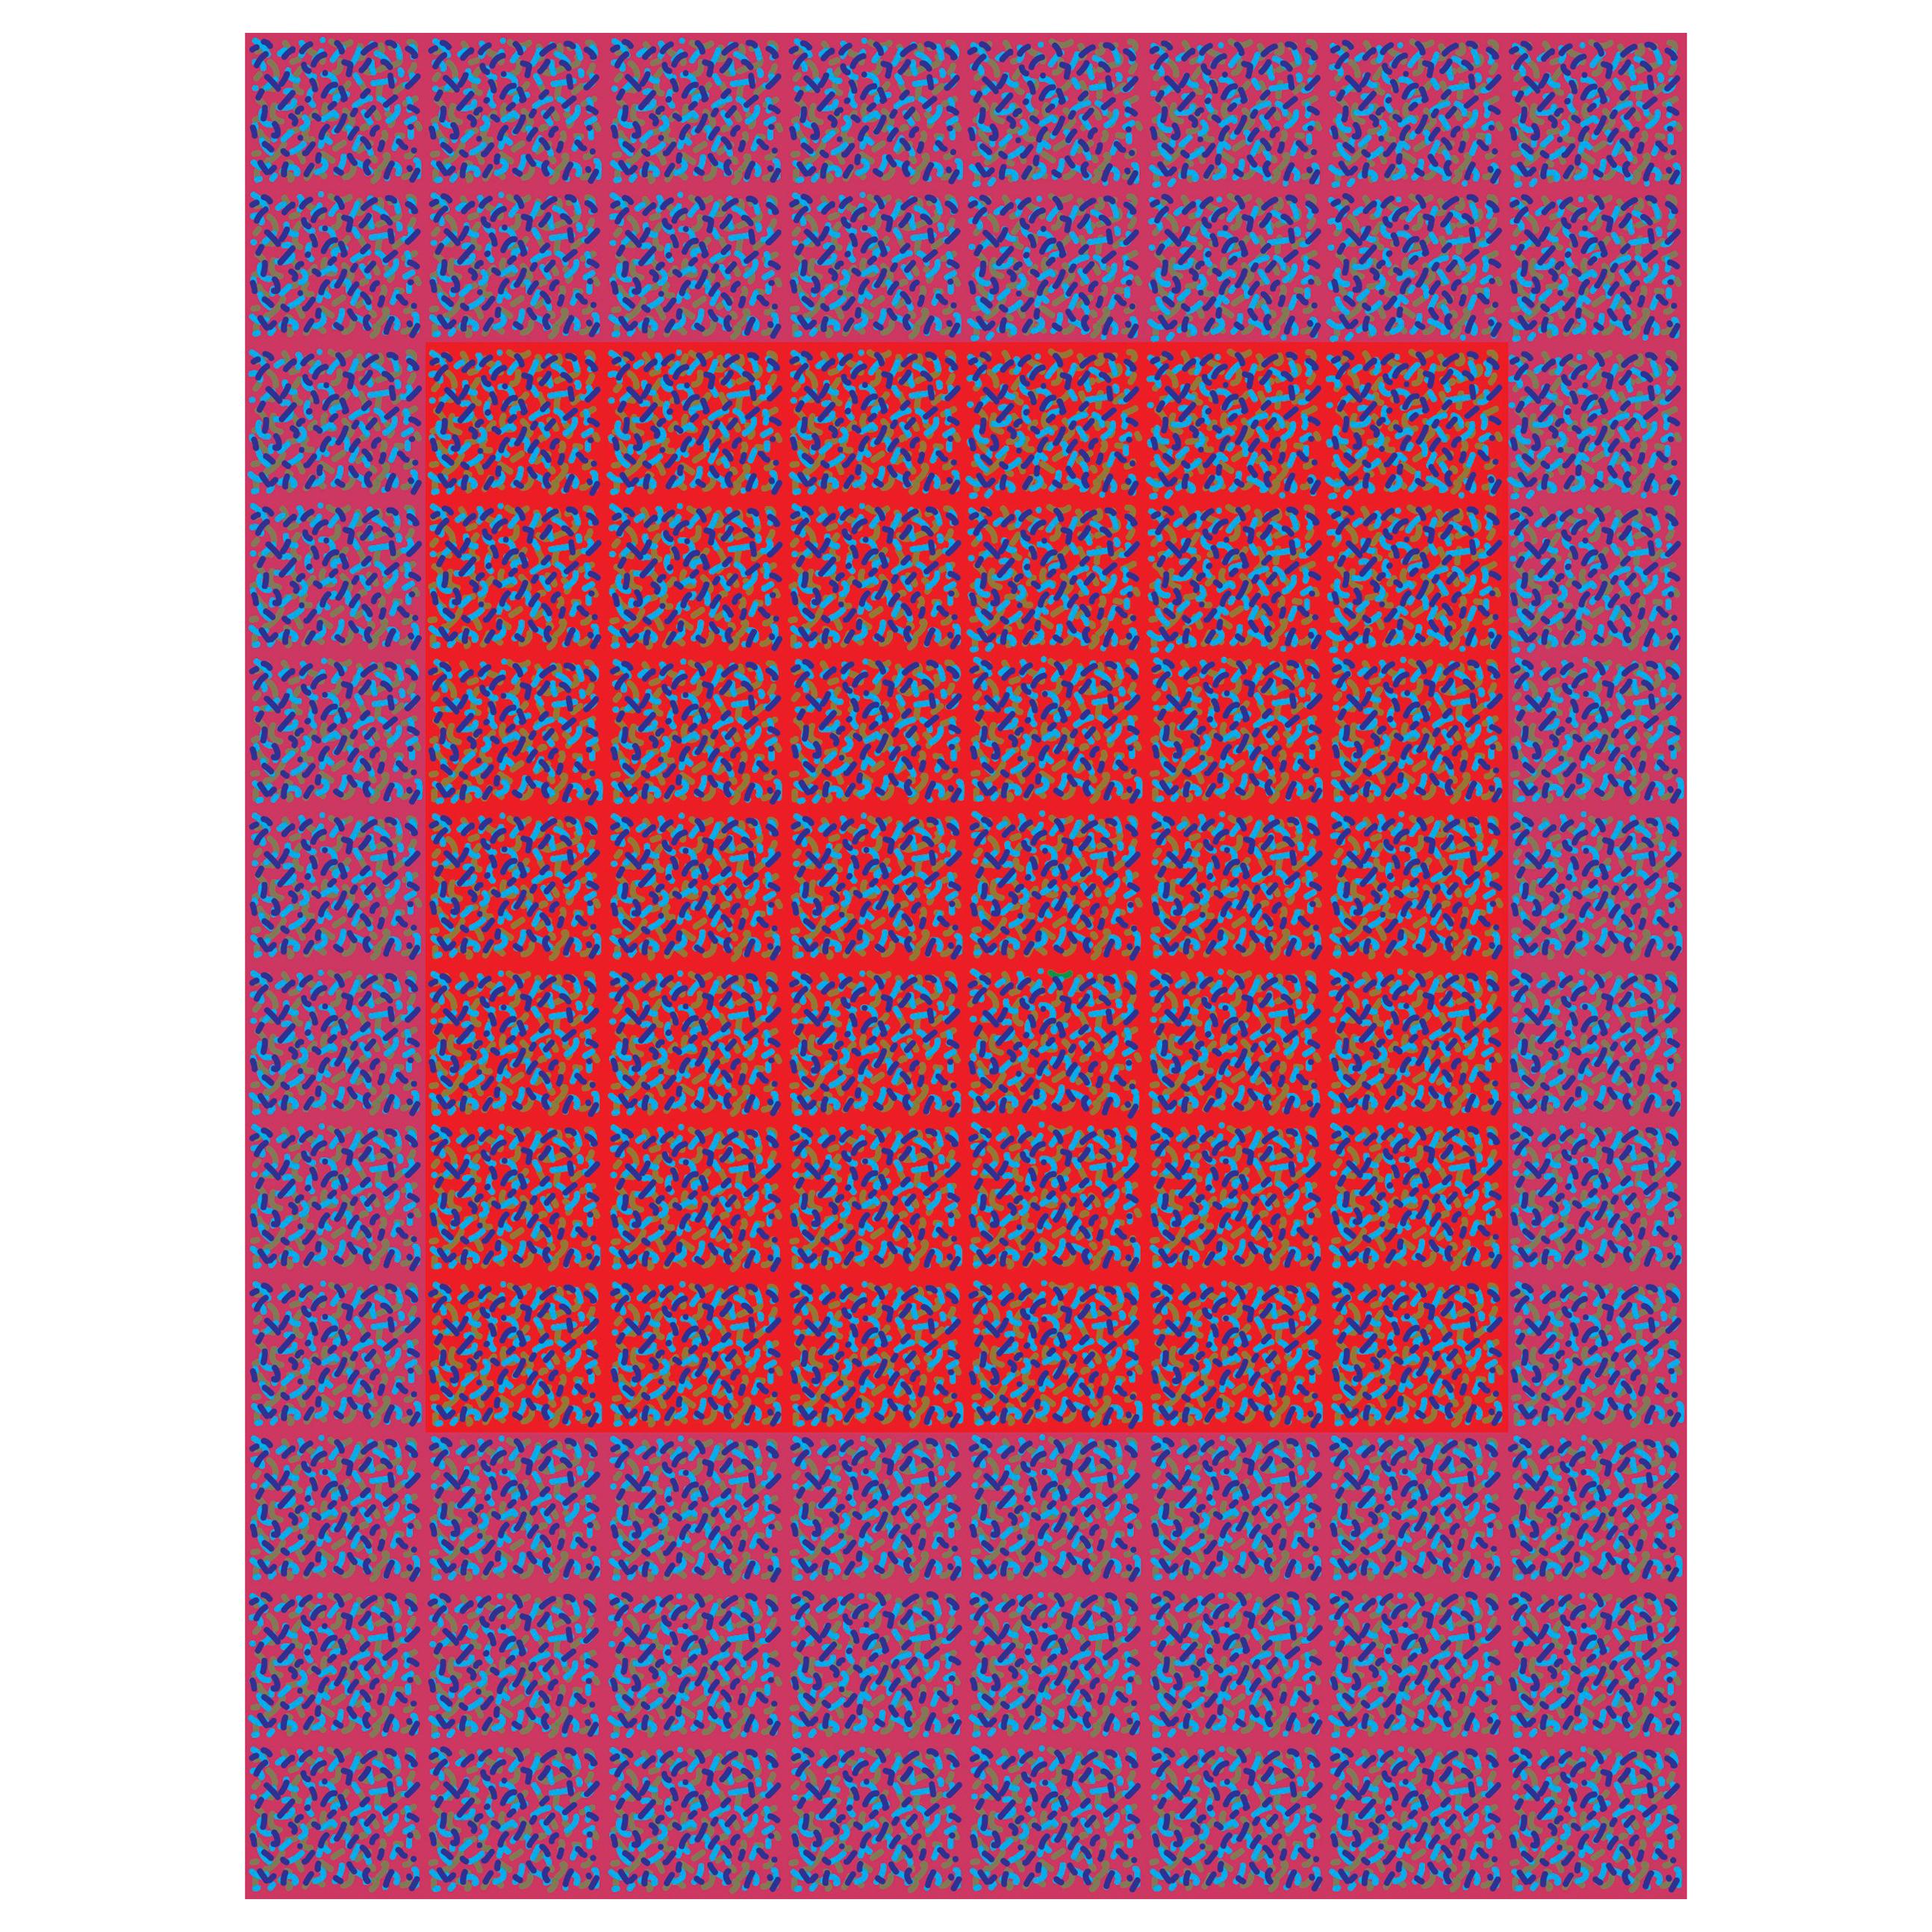 Michael Zenreich Conceptual Abstract Digital Print "Confetti Red Square V2" For Sale